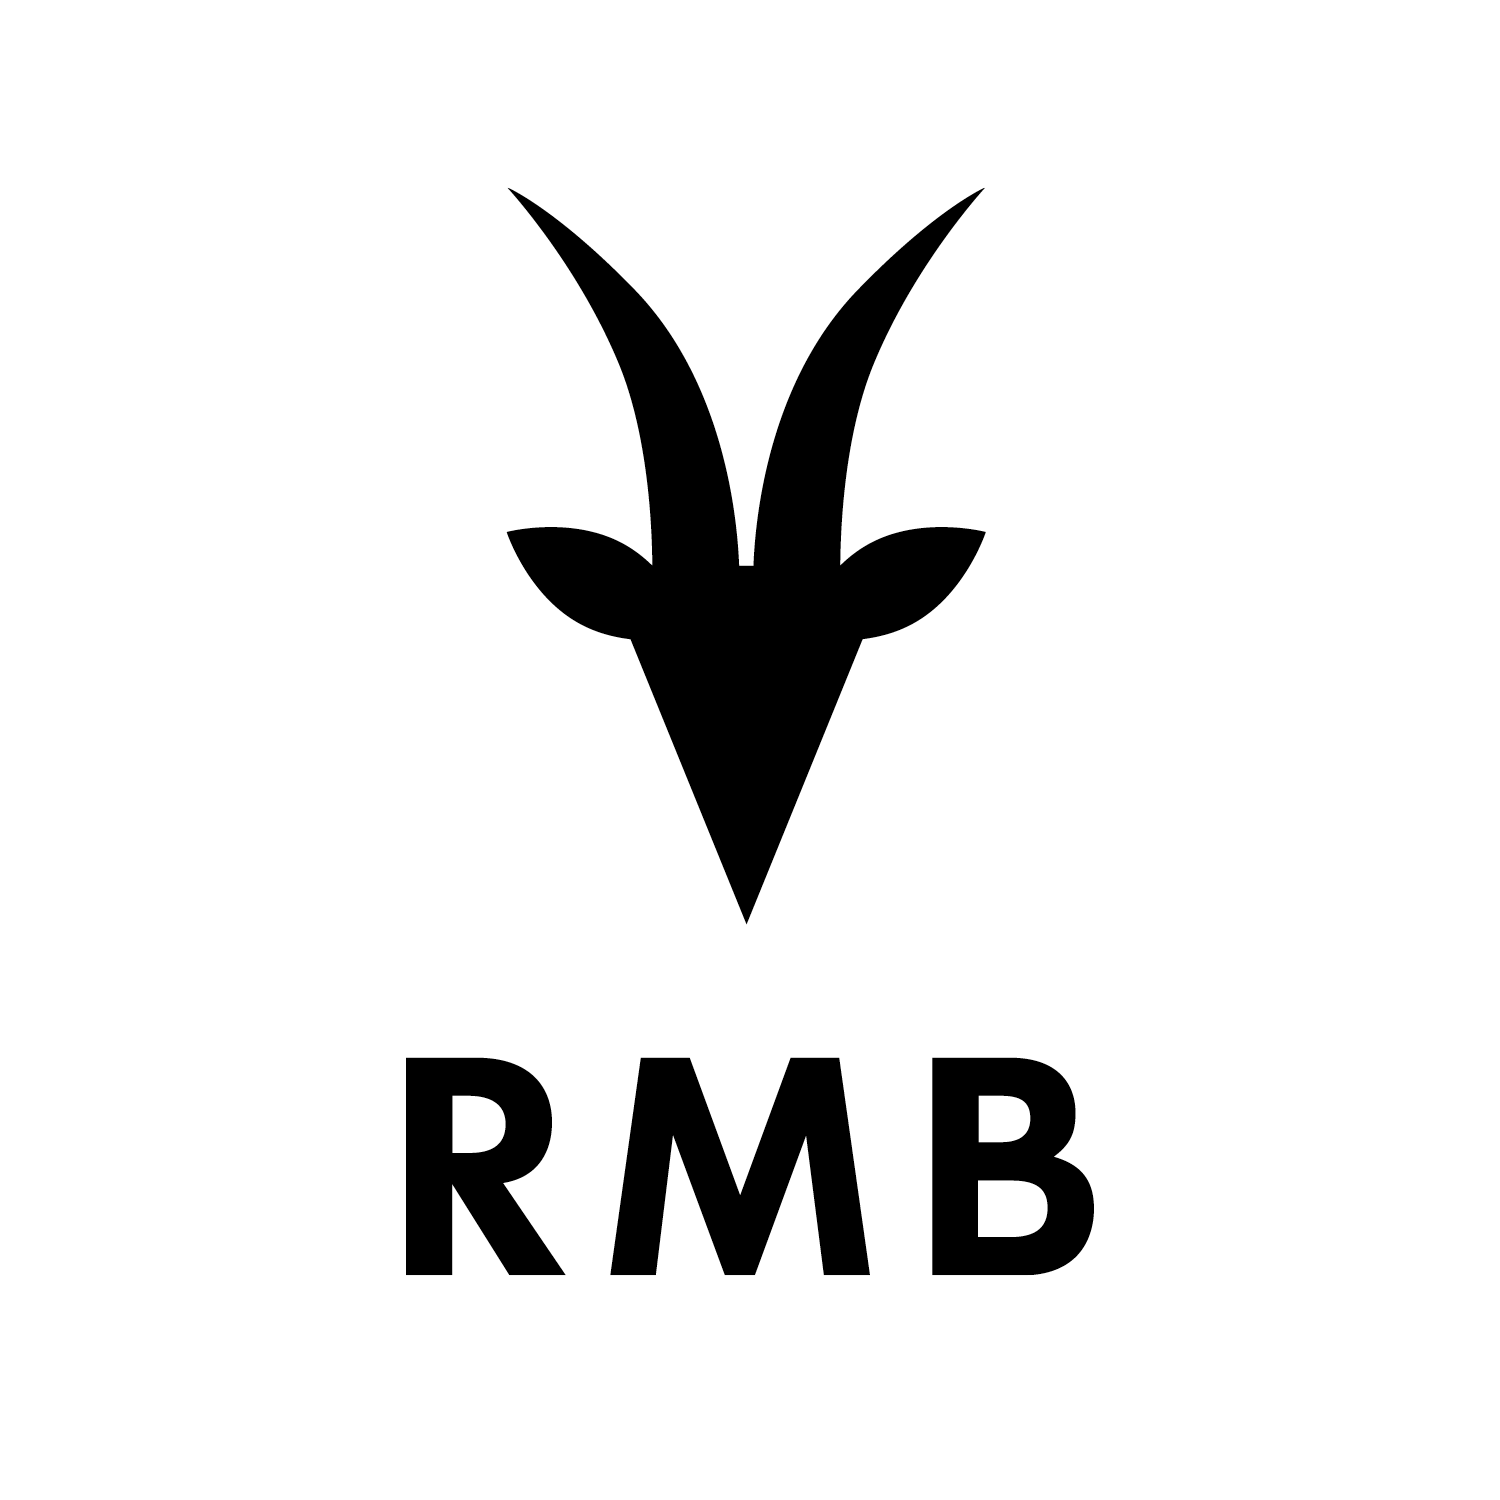 RMB_logo_35641de4-7326-462f-97e3-2af1ec0a65cb.png